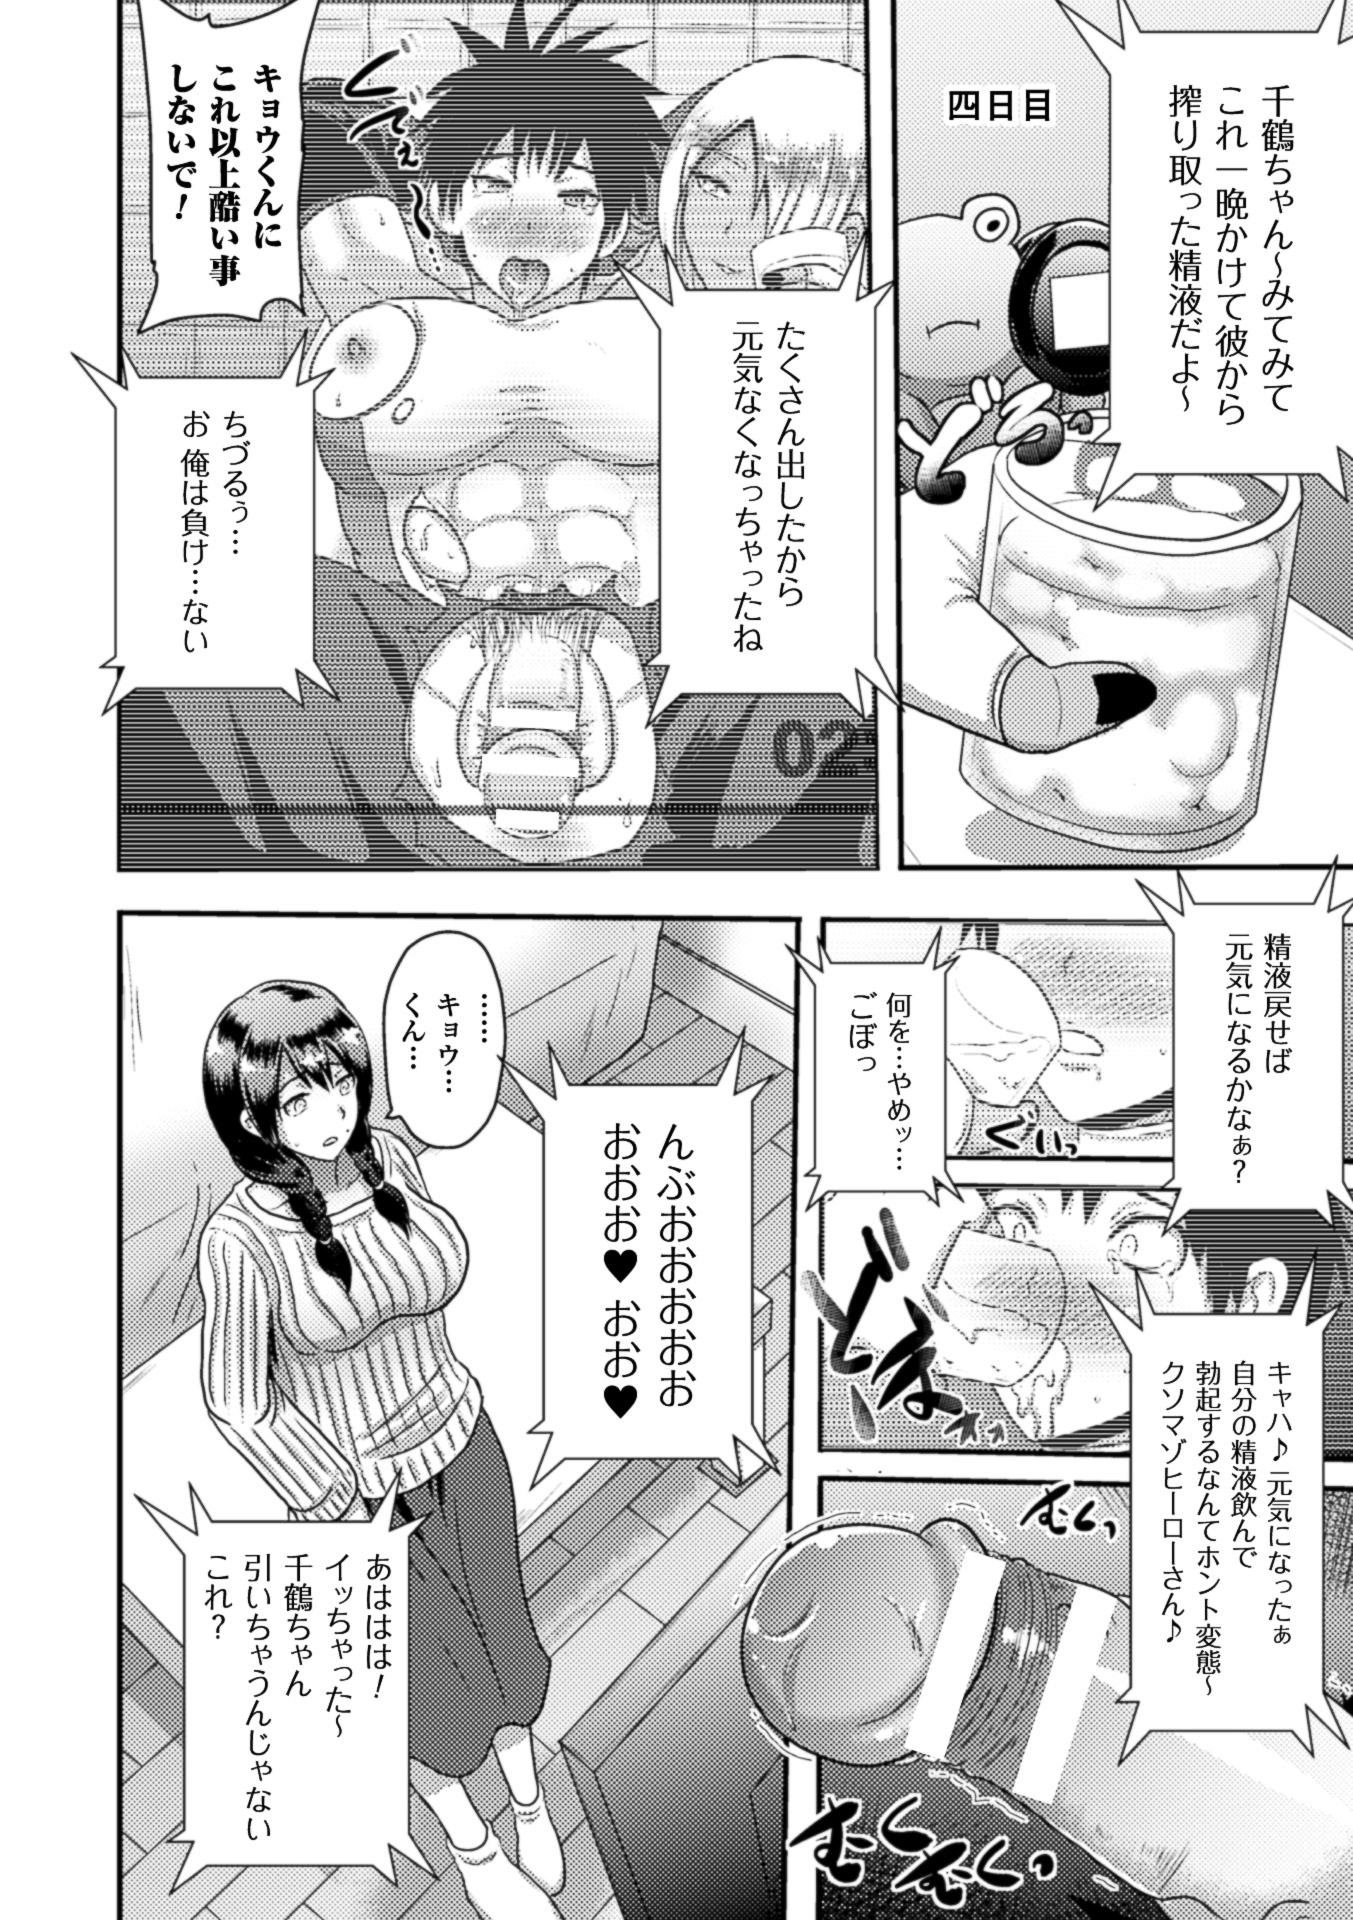 2D Comic Magazine Netorareta Kanojo kara no Video Letter de Utsu Bokki! Vol. 2 65